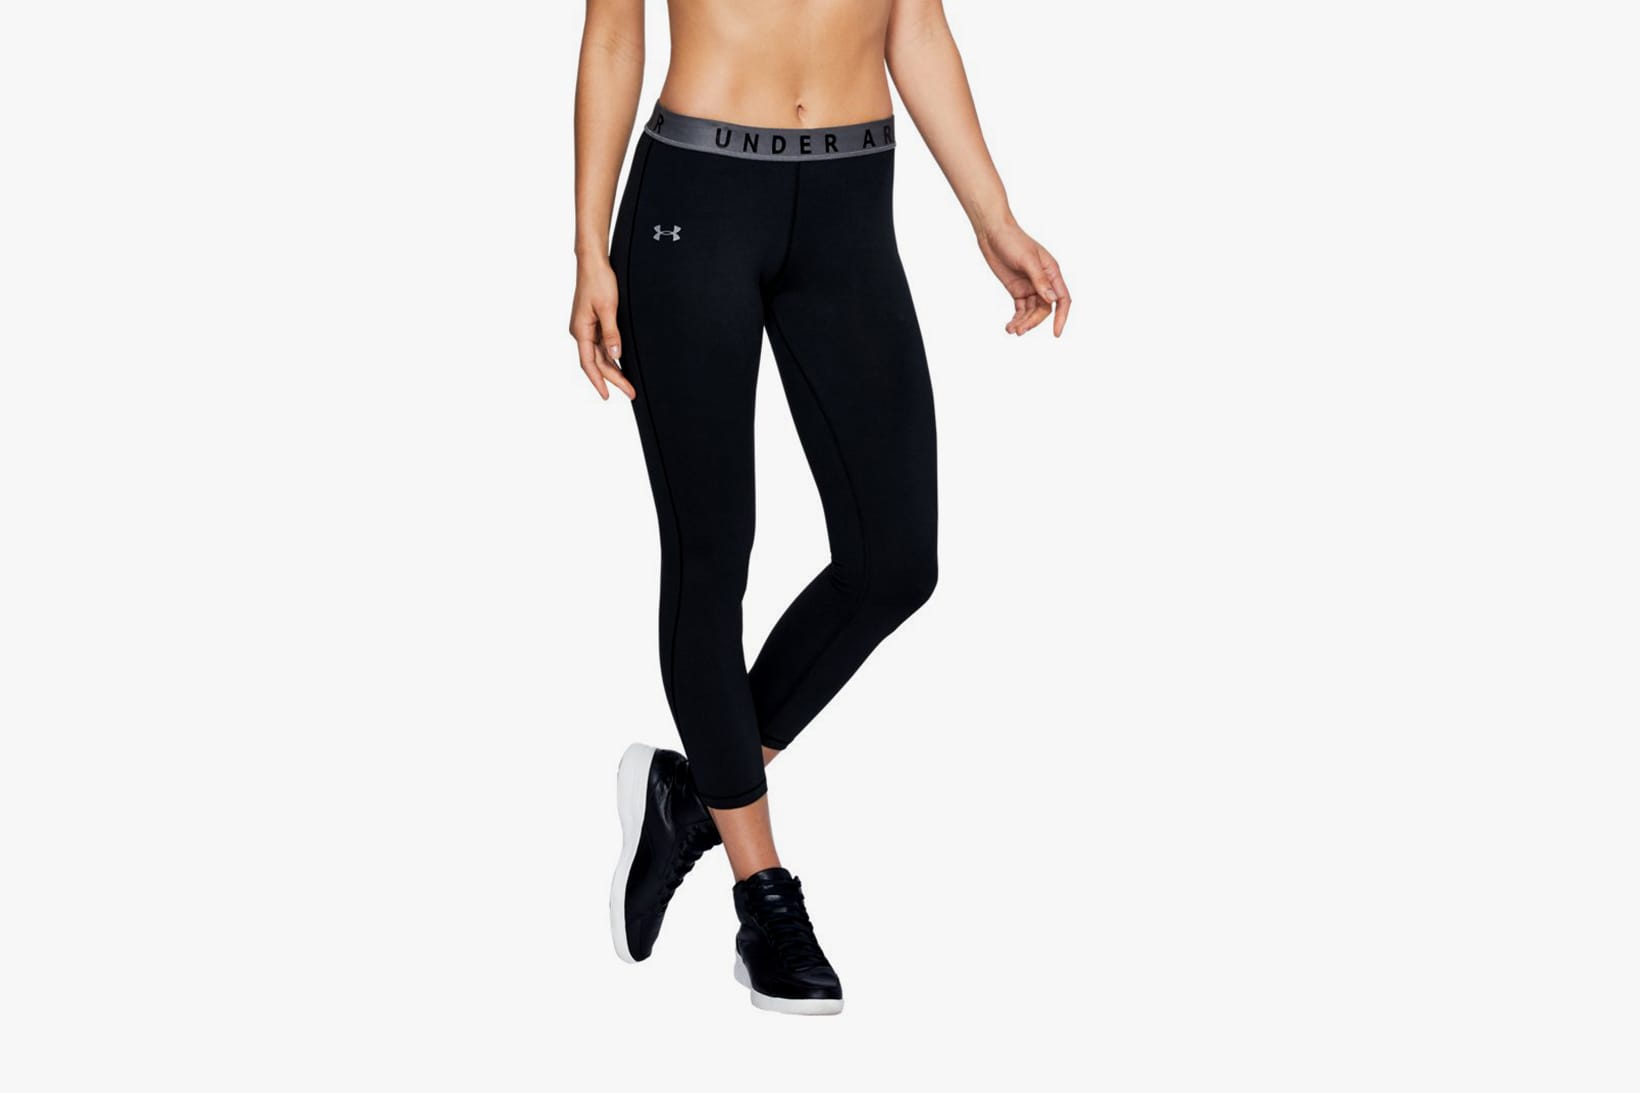 adidas women's yoga pants